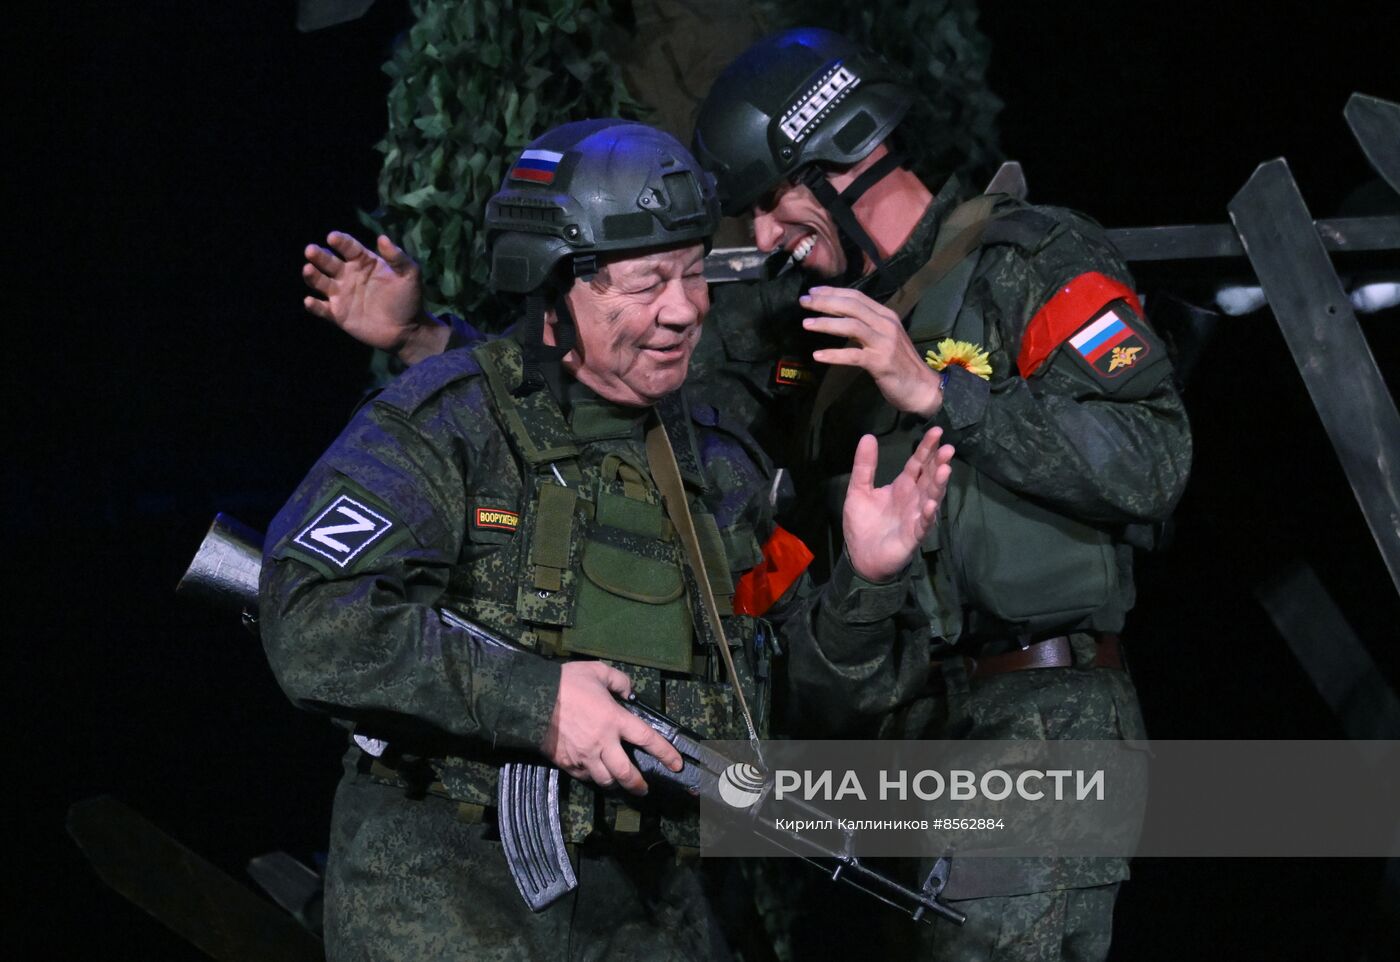 Спектакль "Данькина каска" в театре Российской Армии